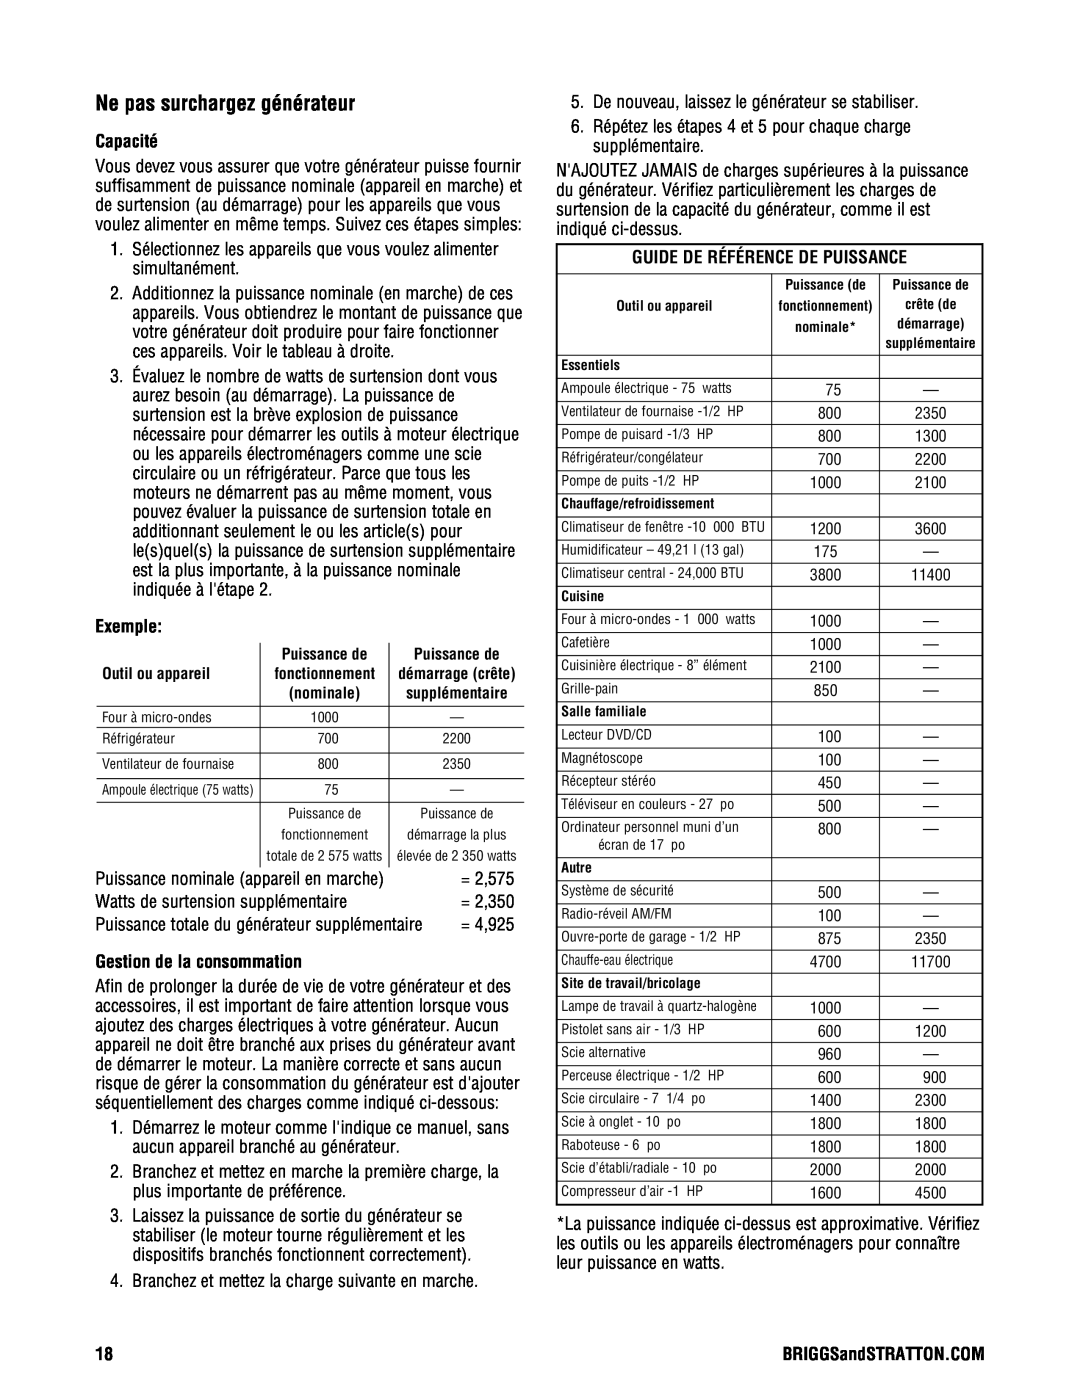 Briggs & Stratton PRO4000 manual Ne pas surchargez générateur, Capacité, Exemple, Gestion de la consommation 